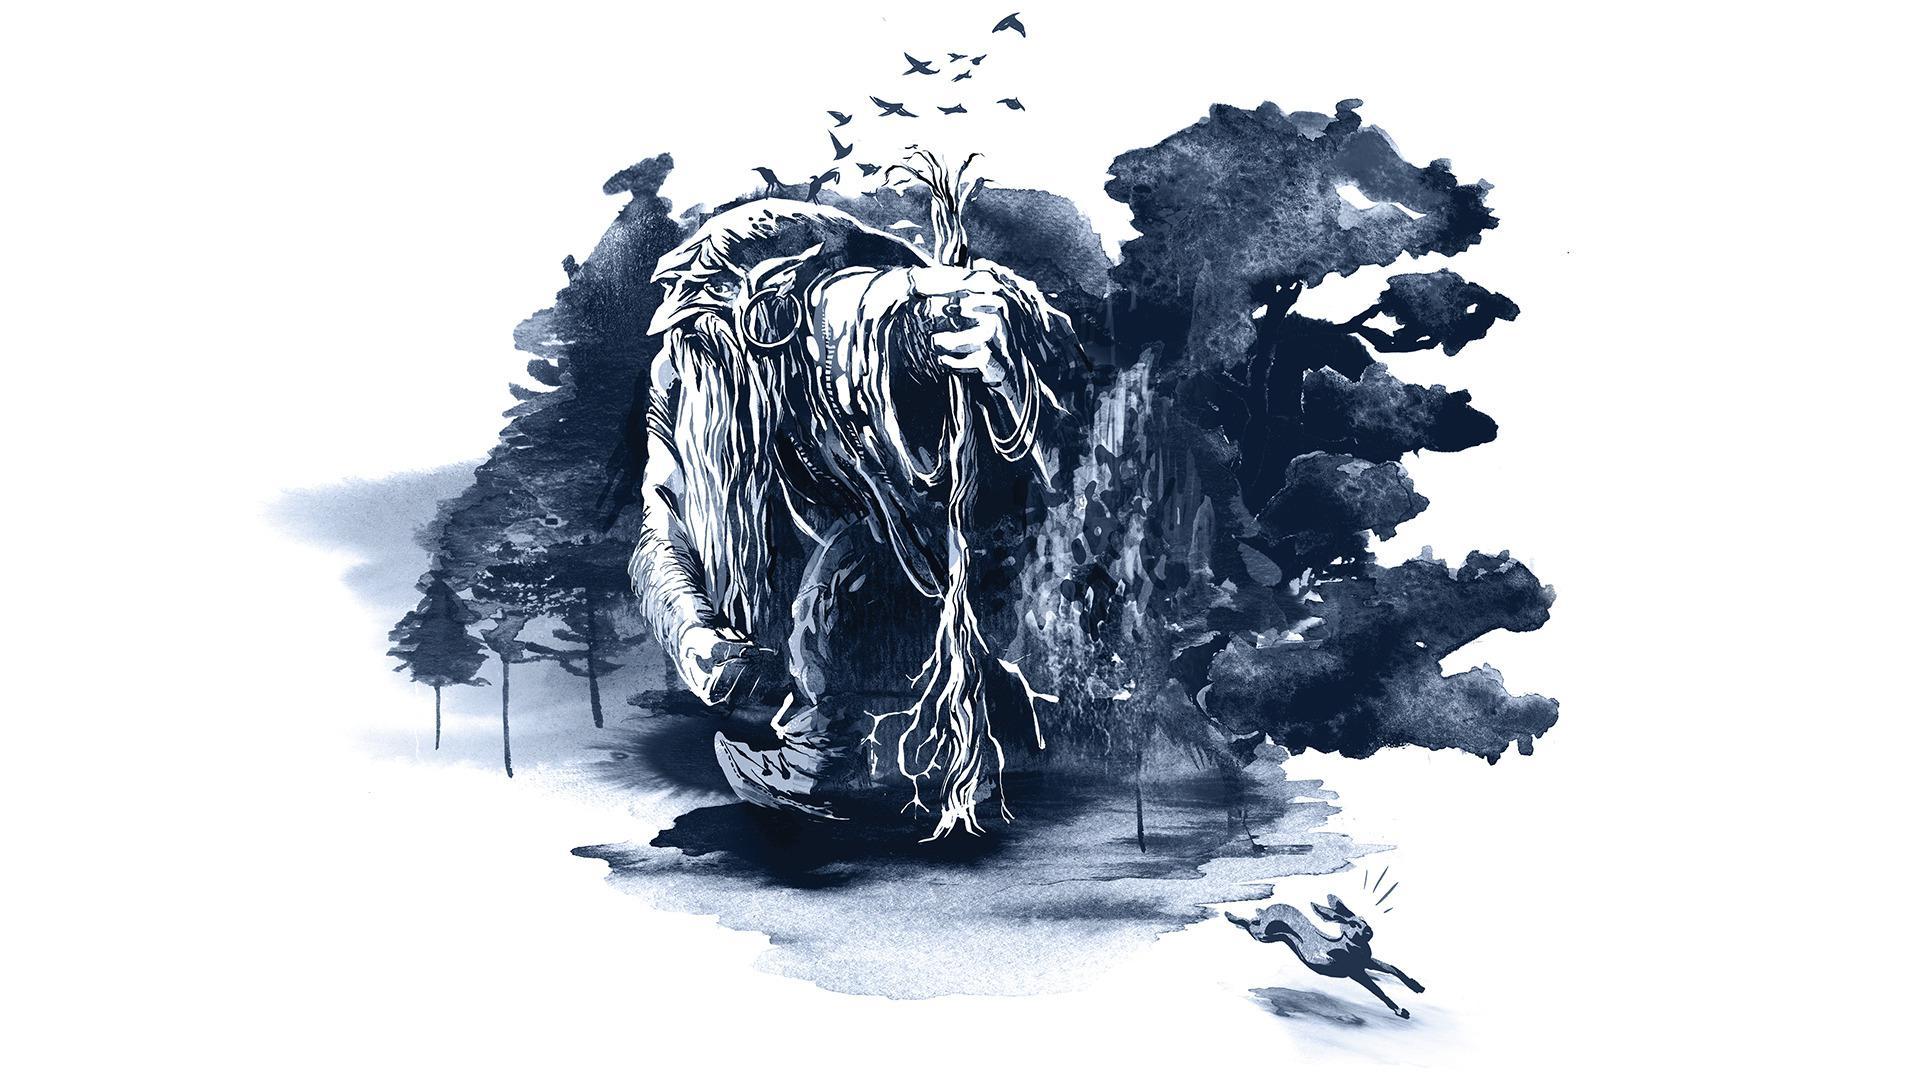 Zechnung eines Trolls in gebückter Haltung, mit langem Bart und einer Art Wanderstab in der Hand. Von Bäumen umgeben, ein Hase rennt davon.